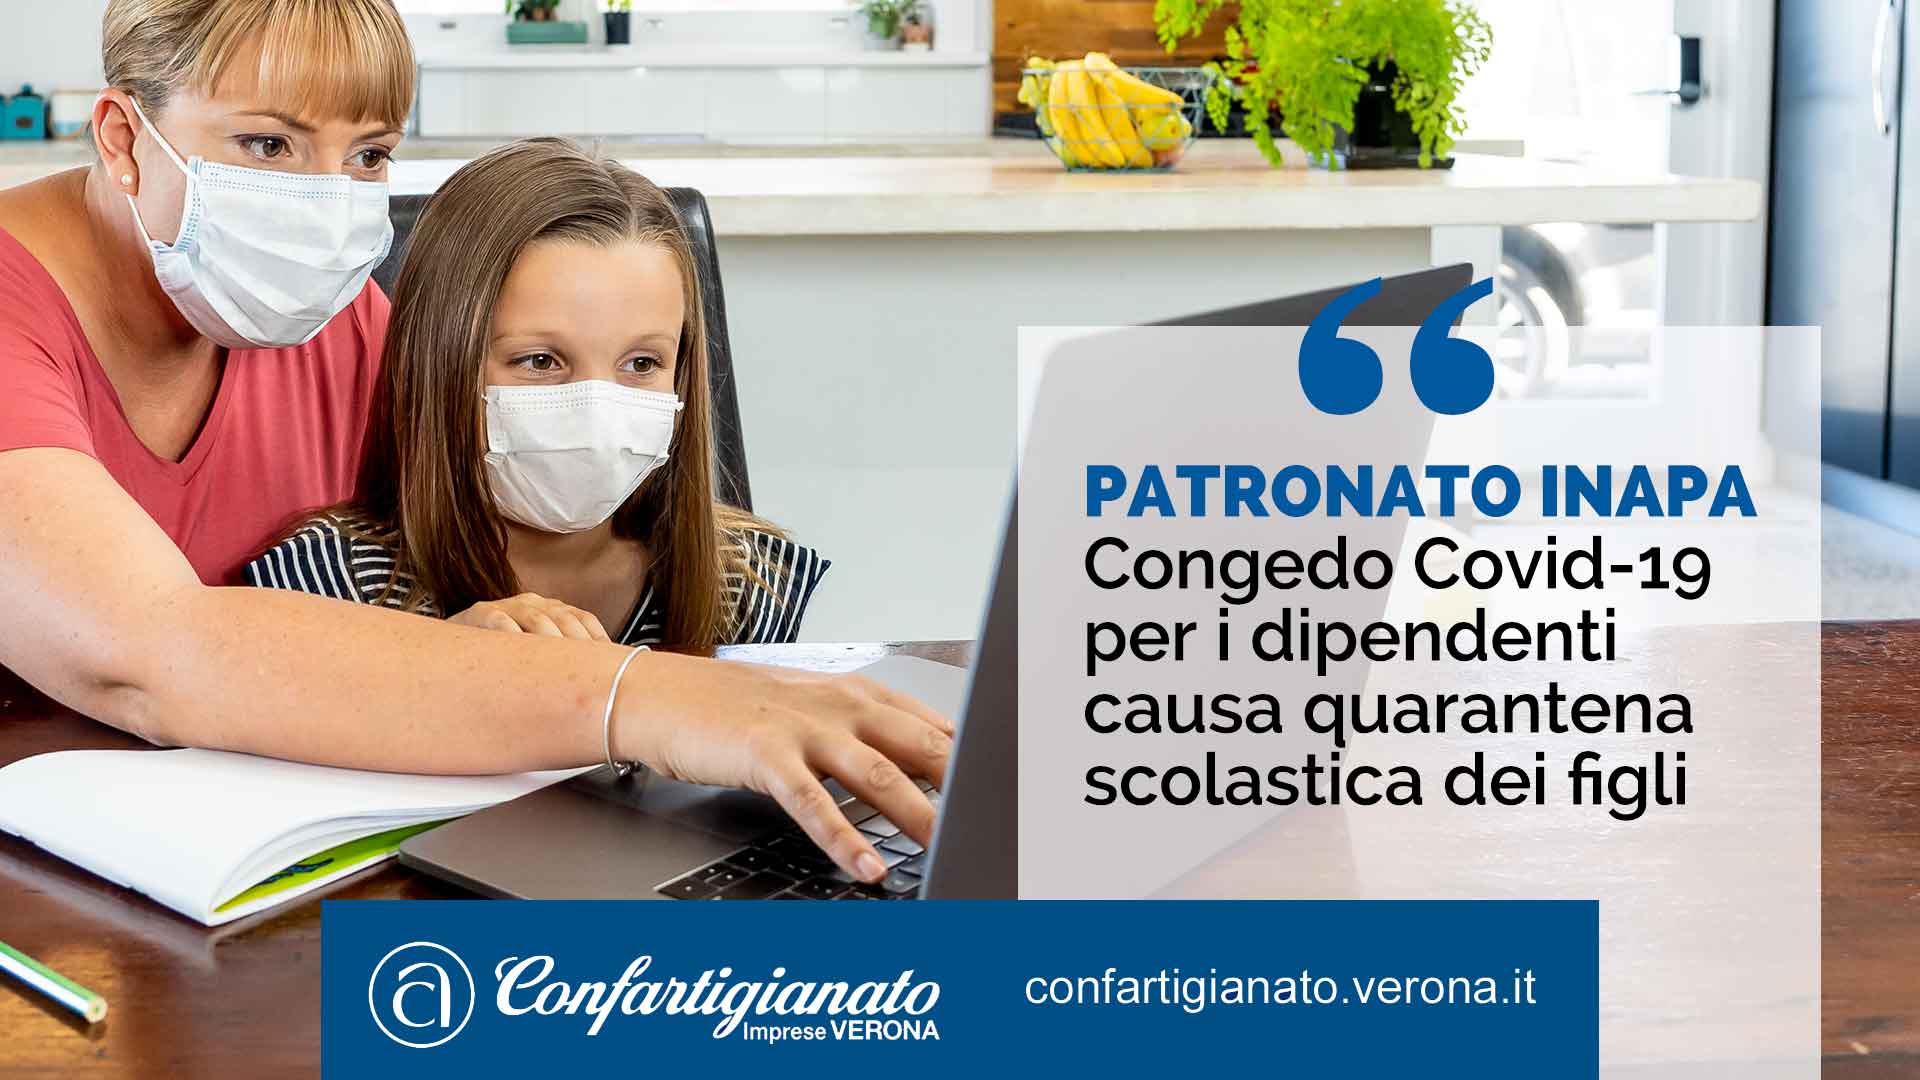 PATRONATO INAPA – Congedo Covid-19 per i dipendenti causa quarantena scolastica dei figli